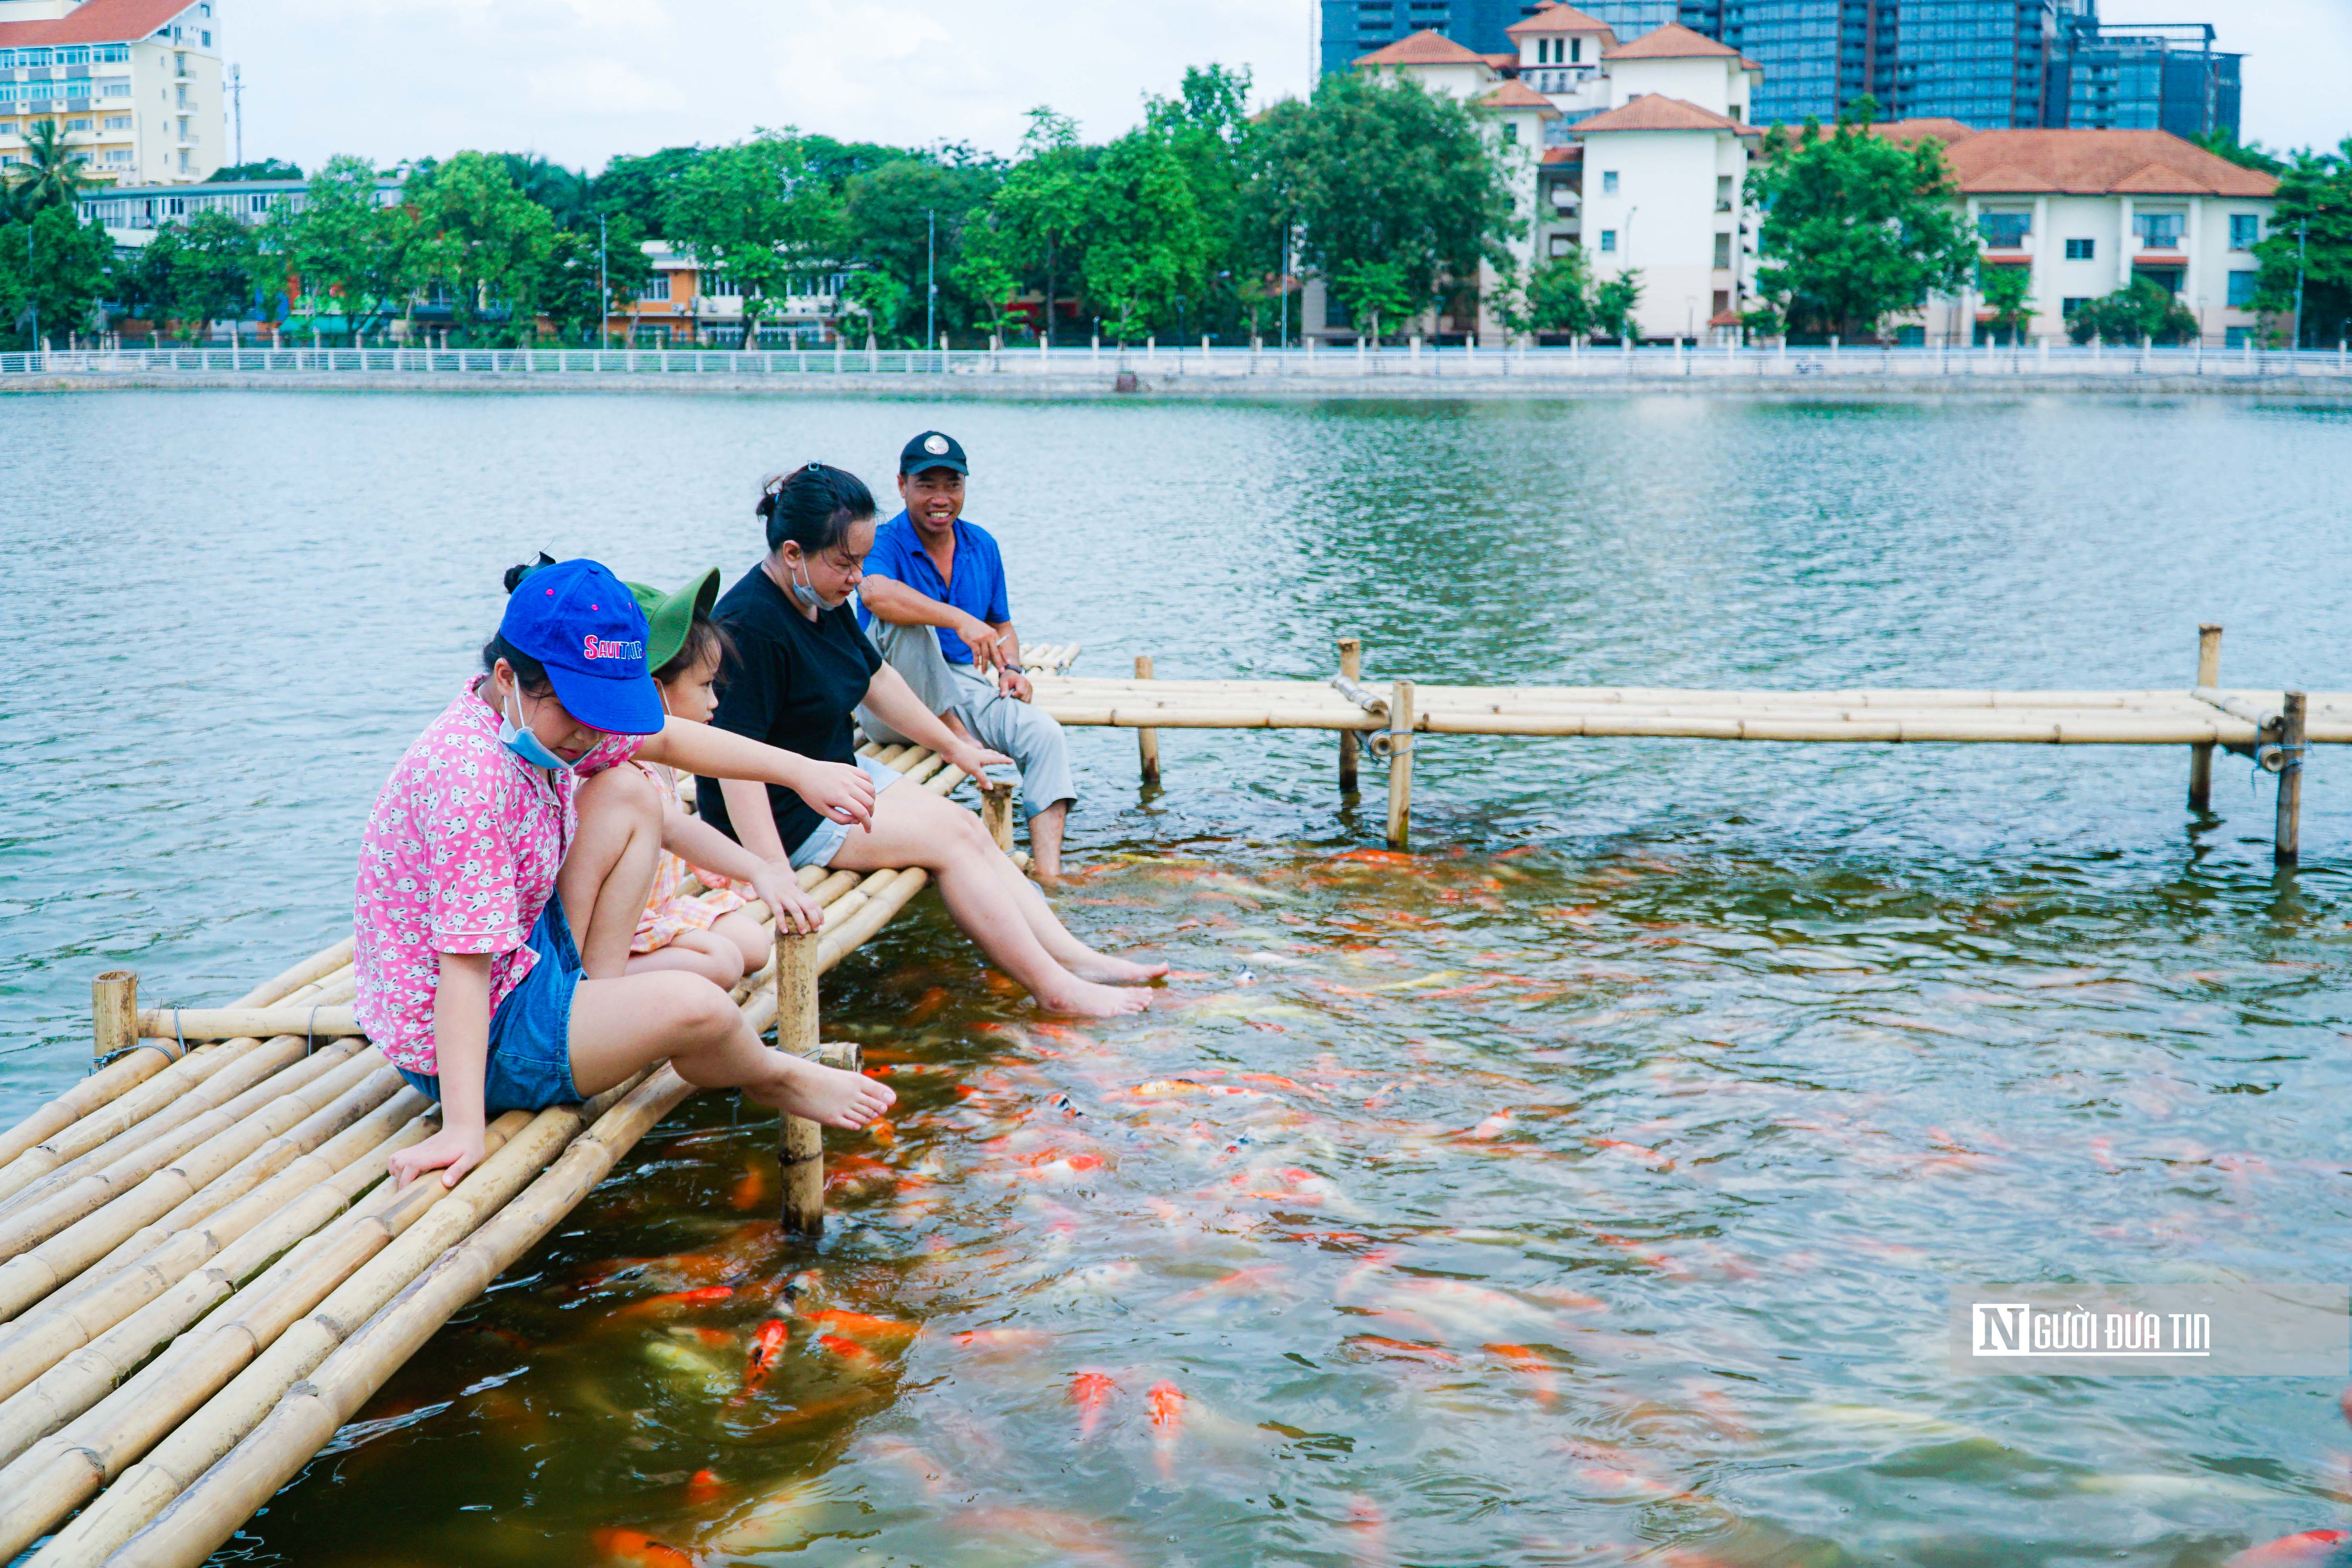 Dân sinh - Người dân Thủ đô thích thú trải nghiệm tại hồ cá koi rộng 3,5ha (Hình 11).